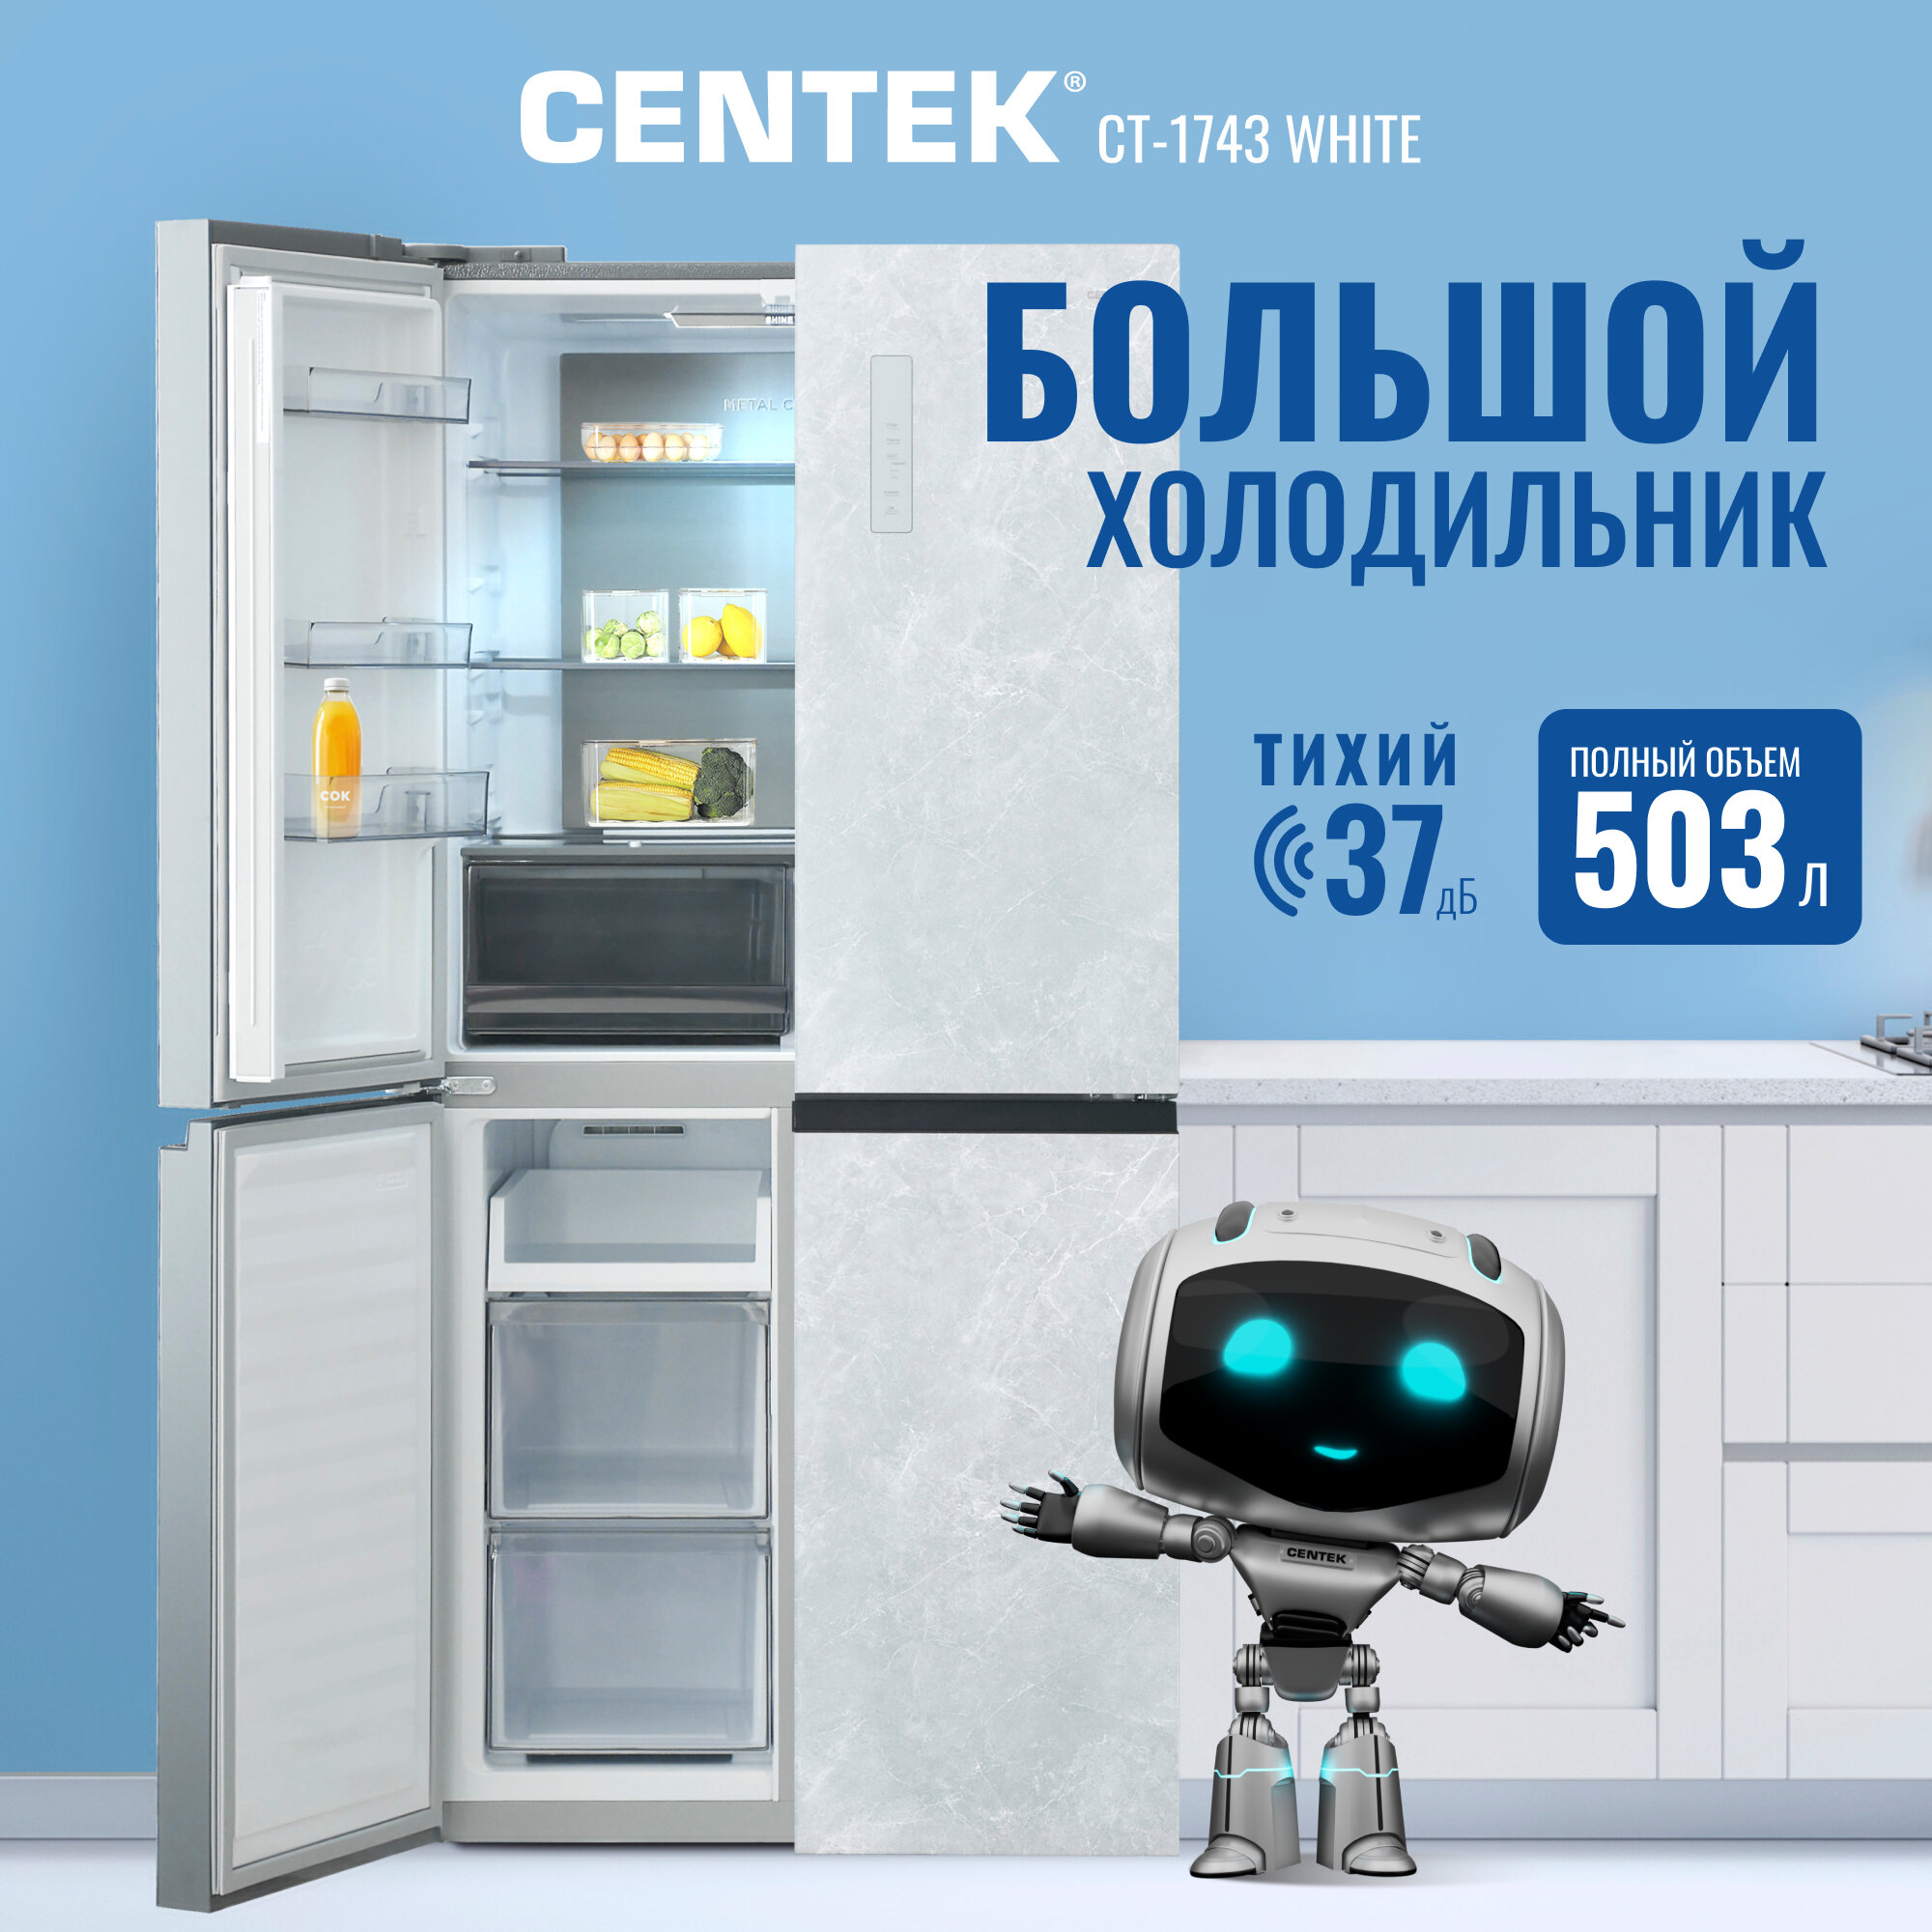 Холодильник No-Frost Centek CT-1743 White Stone 503л текстура камень, инверторный, 4 дверный, А++